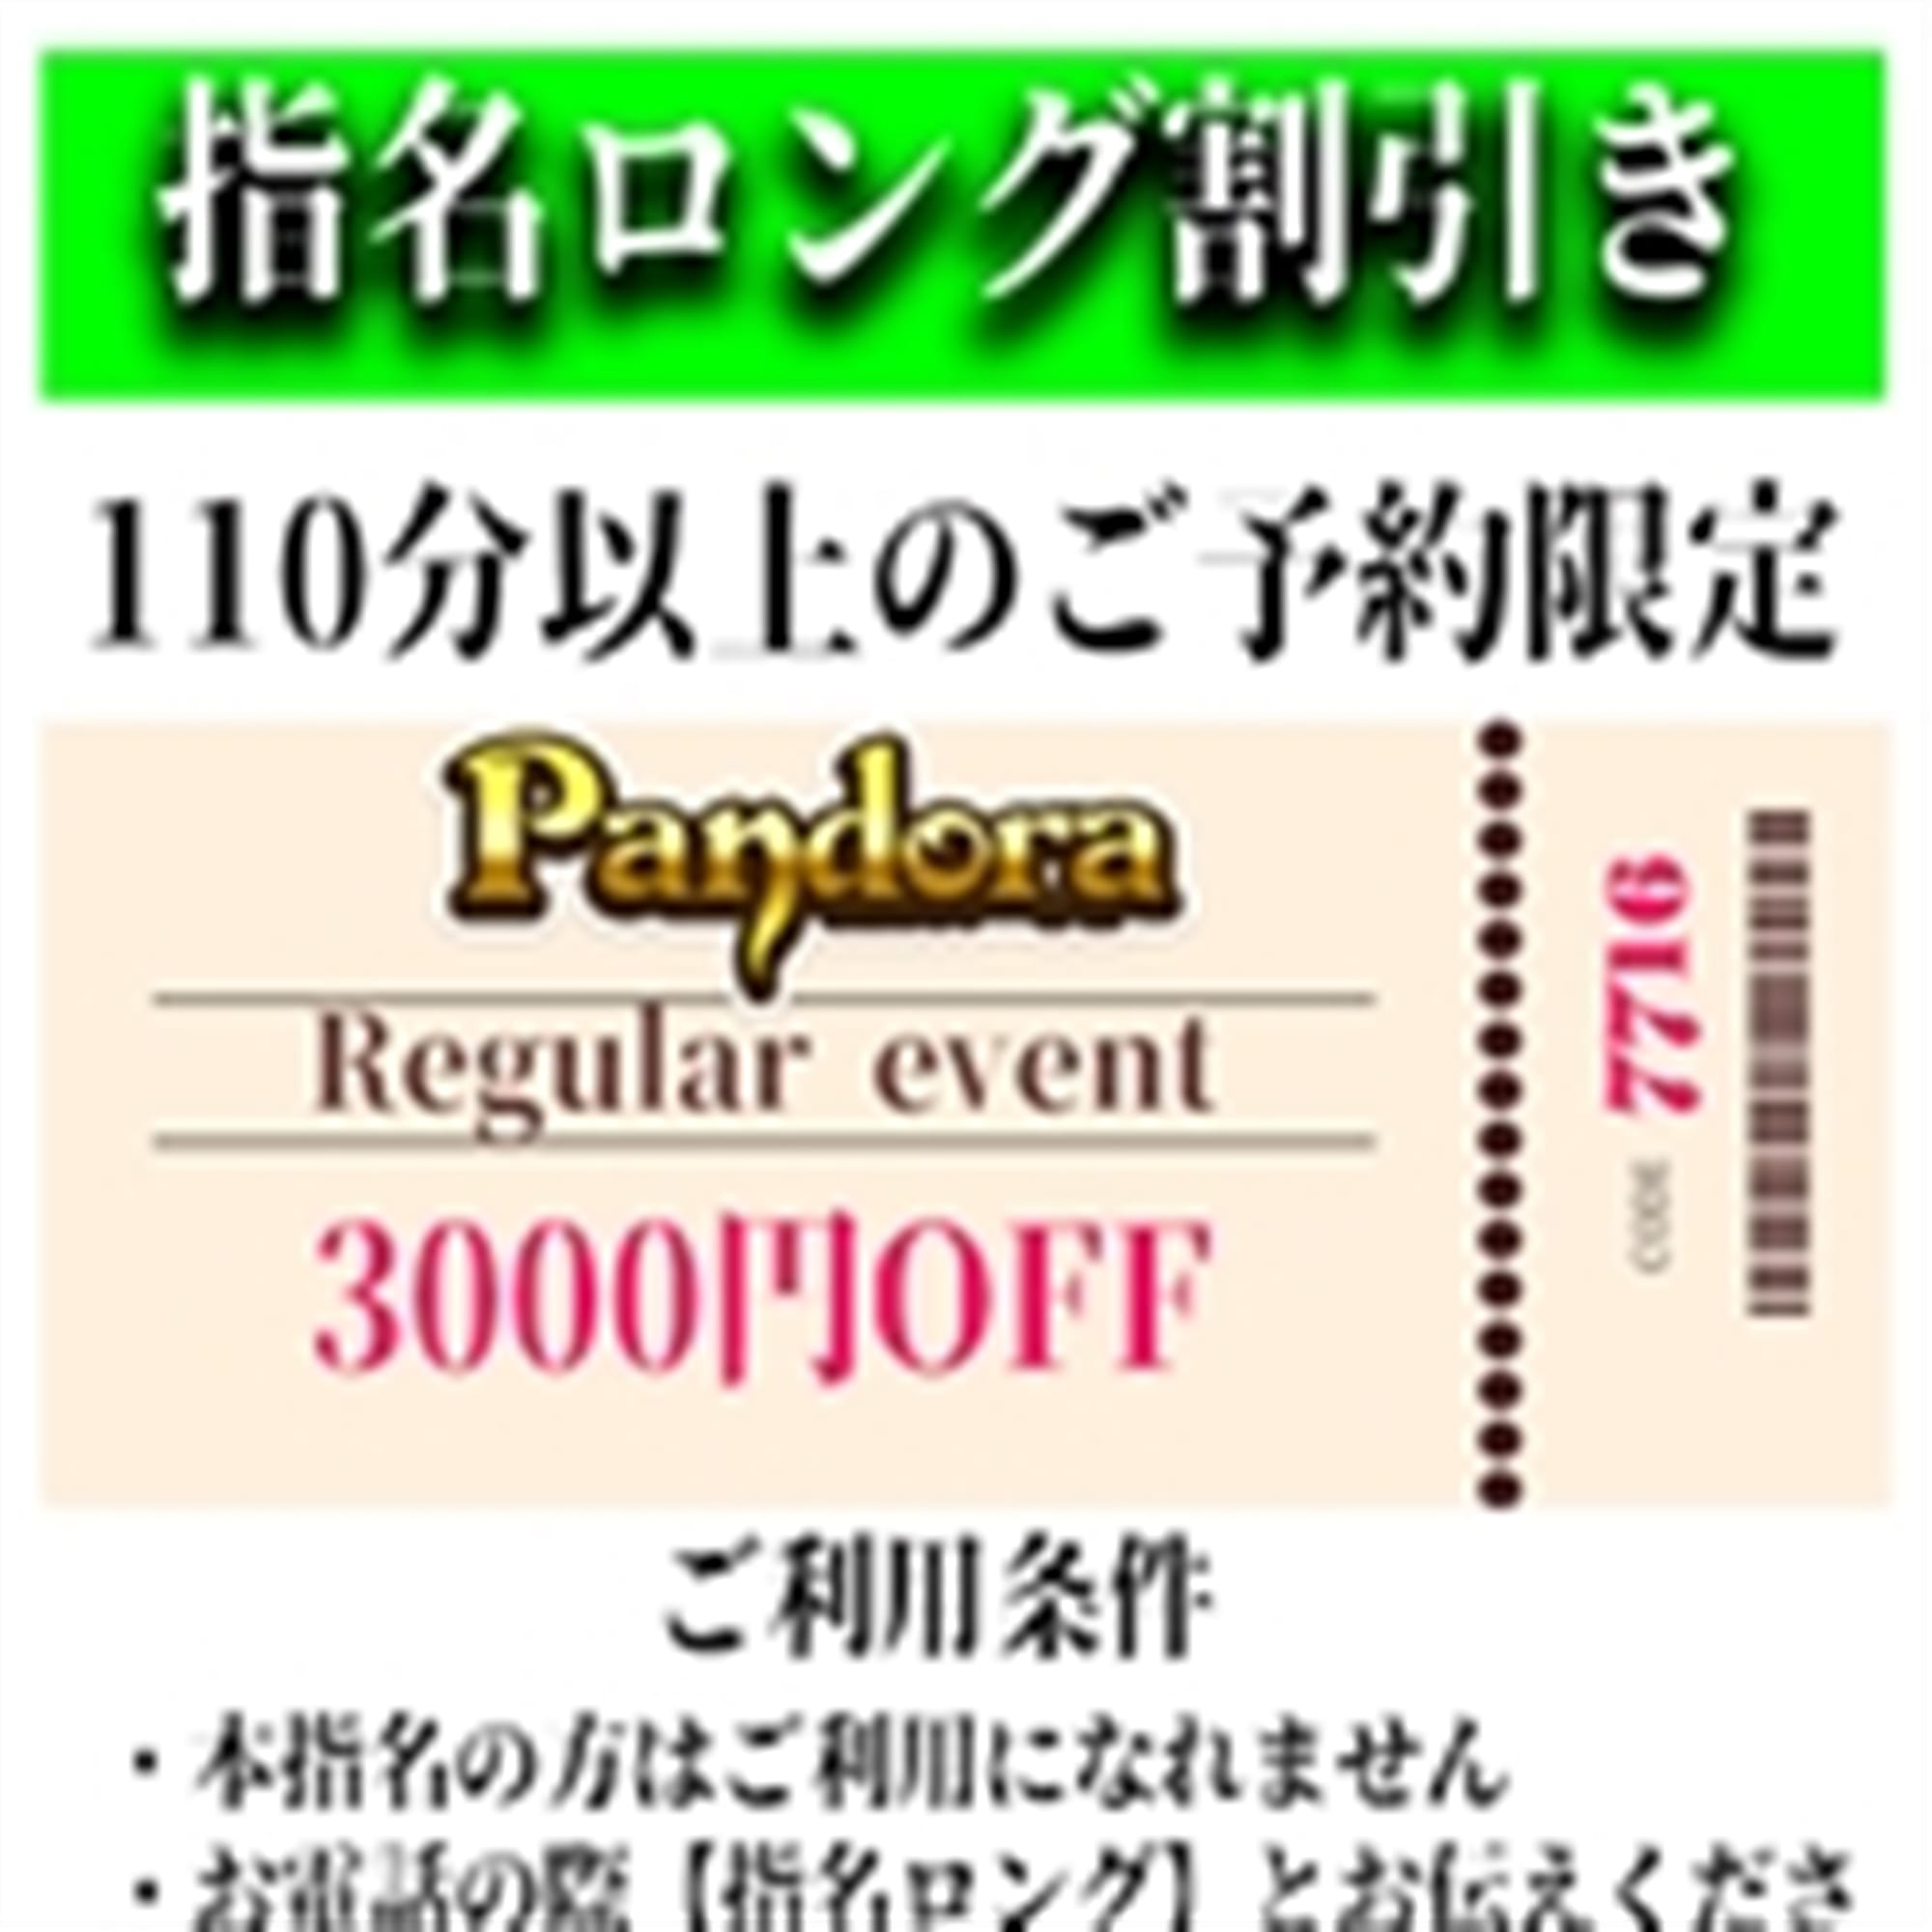 「ご指名のお客様も遊べるロングコース割引」04/27(土) 06:40 | Pandora(パンドラ)新潟のお得なニュース